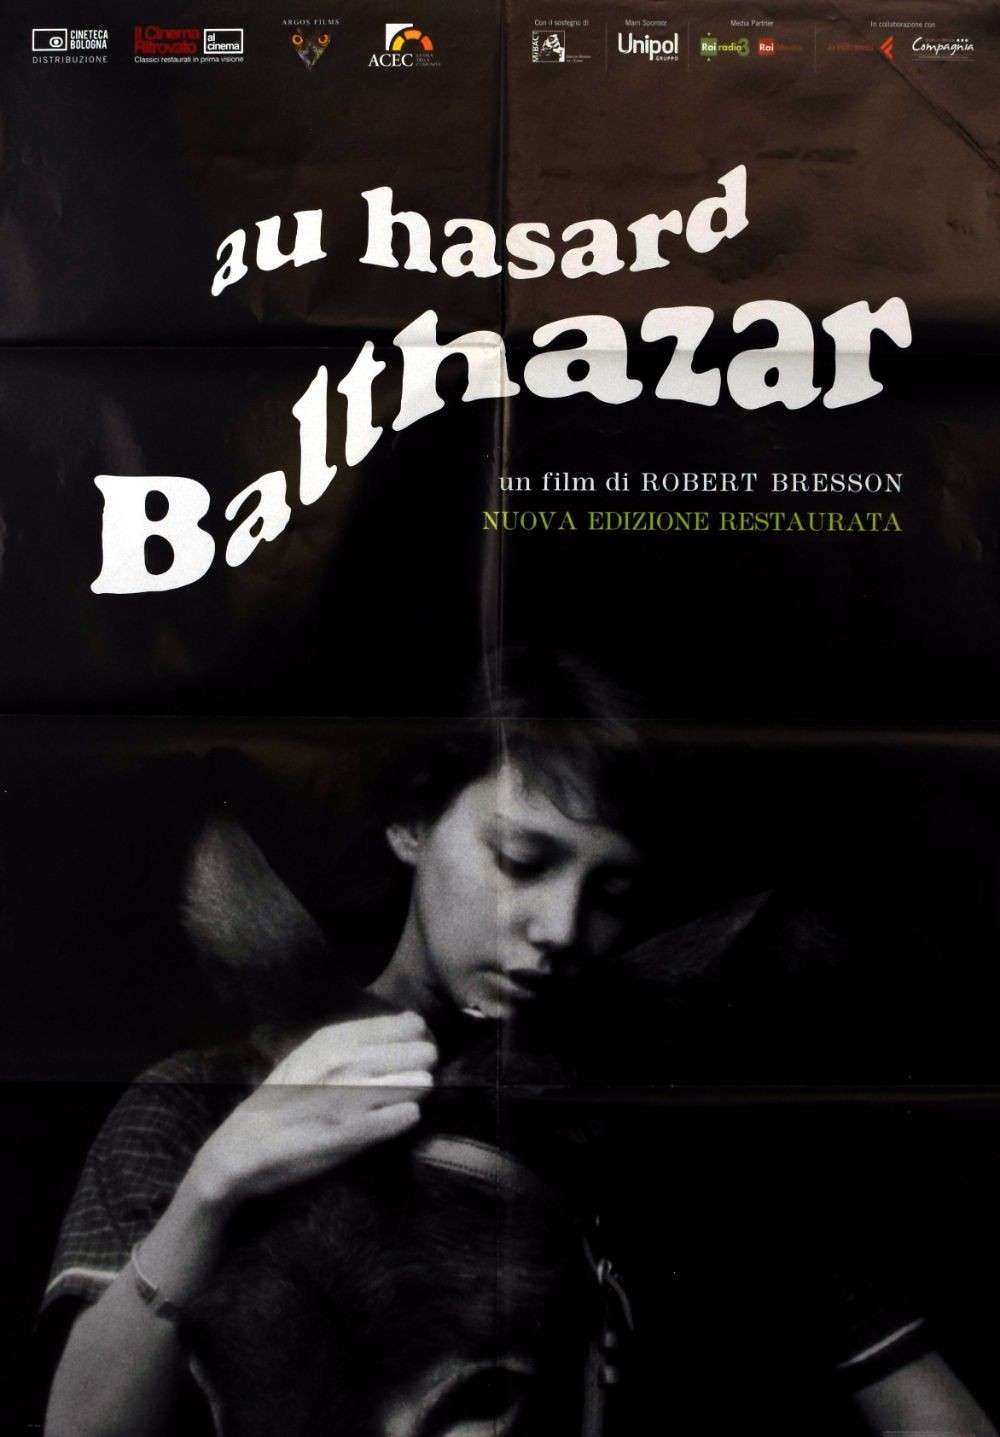 Au hasard Balthazar original movie poster